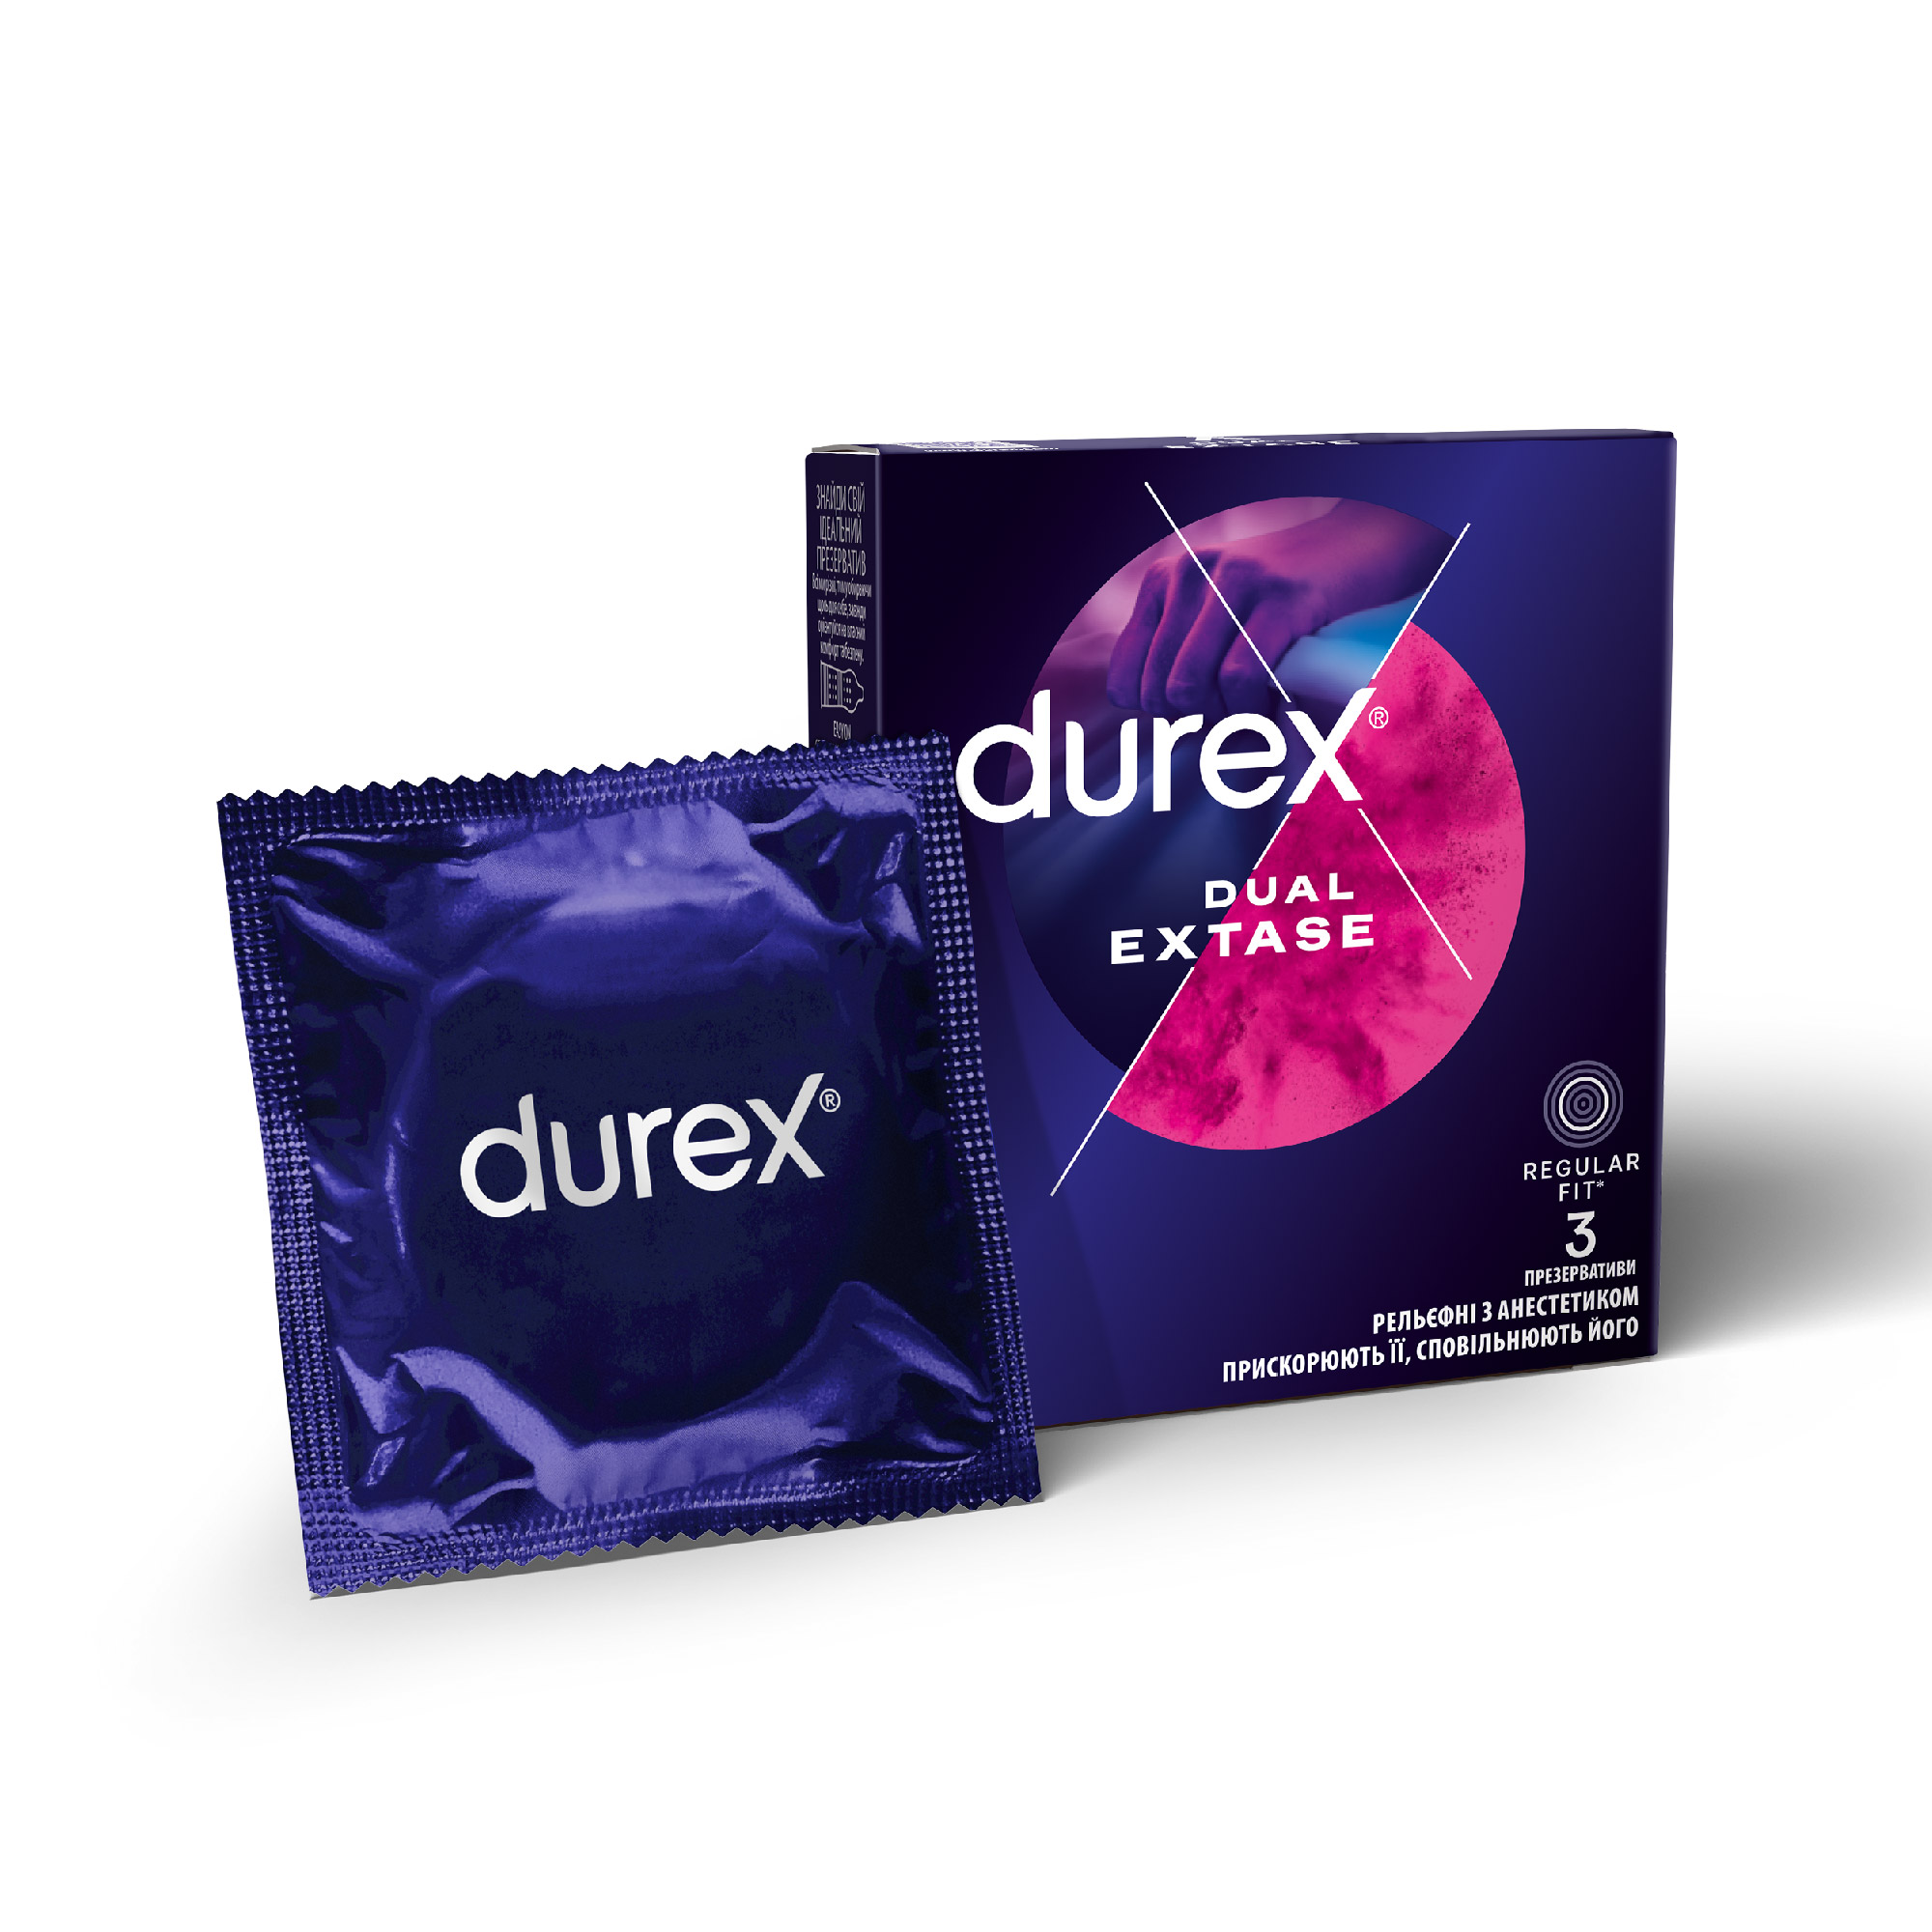 Презервативы Durex (Дюрекс) Dual Extase рельефные с анестетиком, 3 шт.